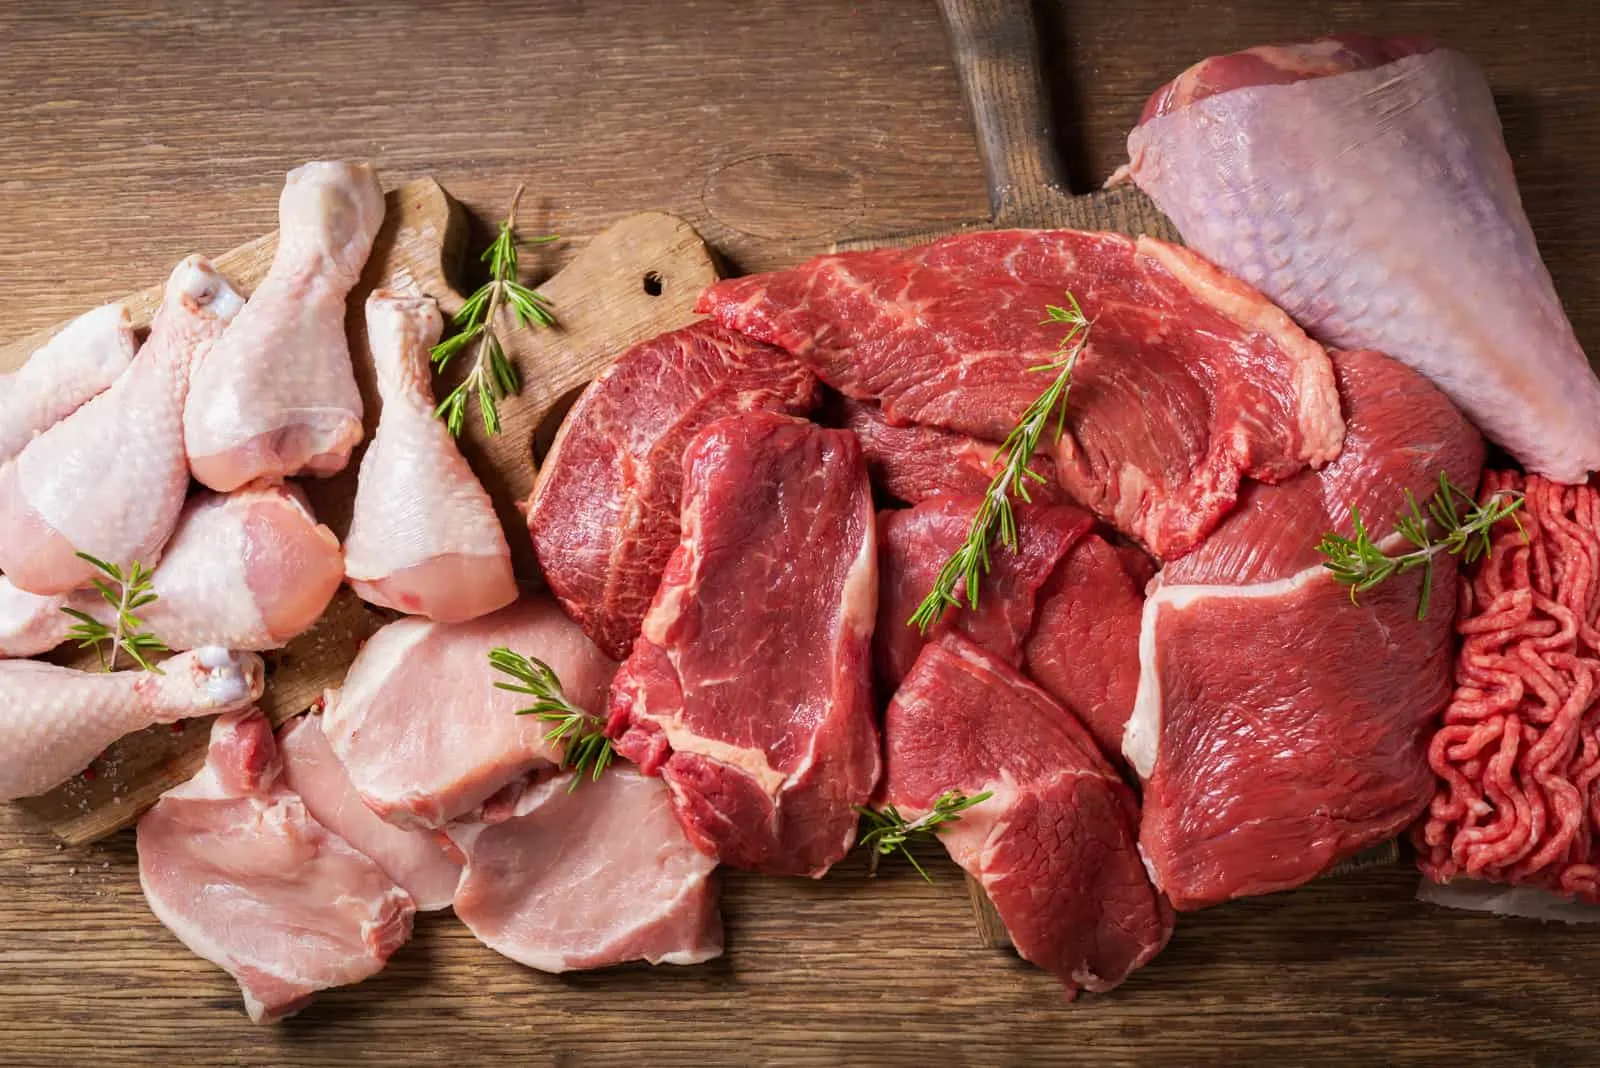 verschiedene Arten von frischem Fleisch Schweinefleisch, Rindfleisch, Truthahn und Huhn auf einem Holztisch, Draufsicht